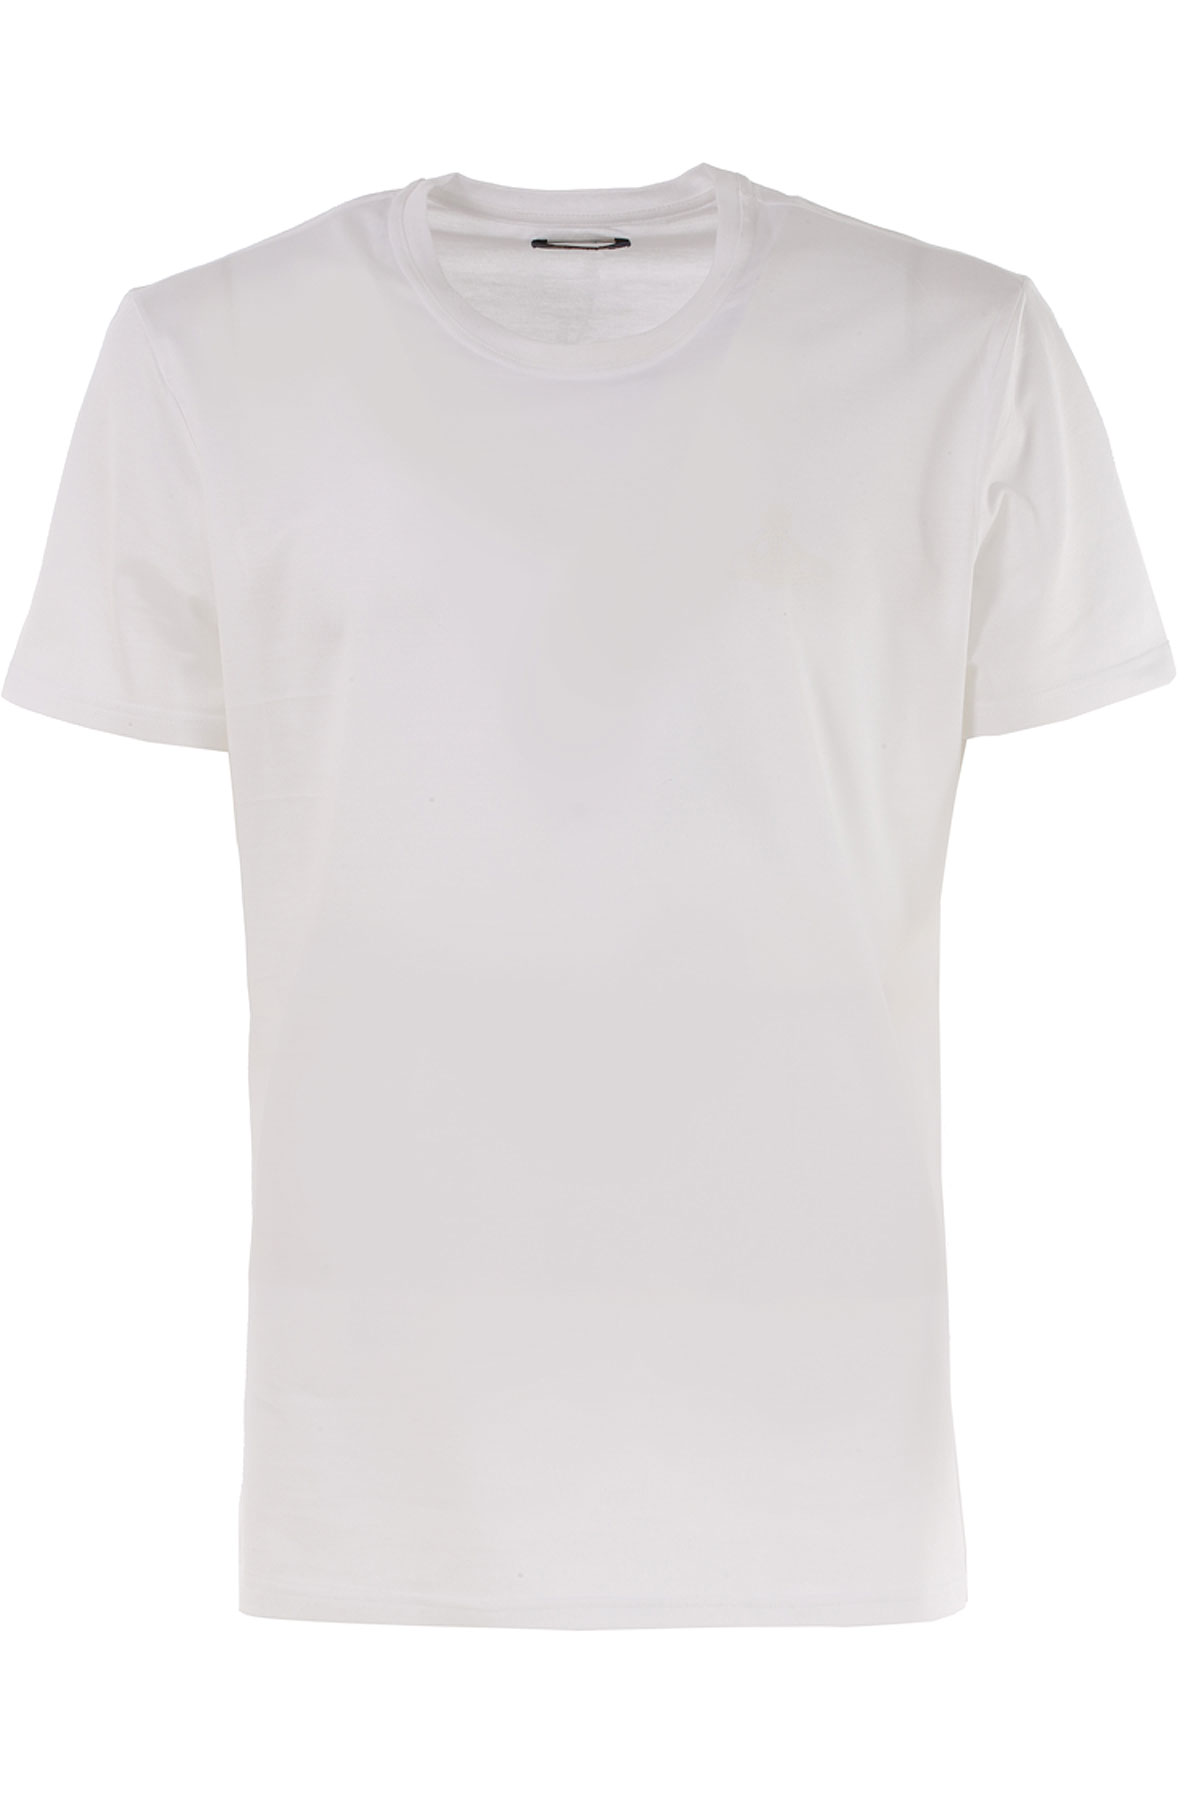 Vivienne Westwood T-shirt Homme , Blanc, Coton, 2017, L S XL XS